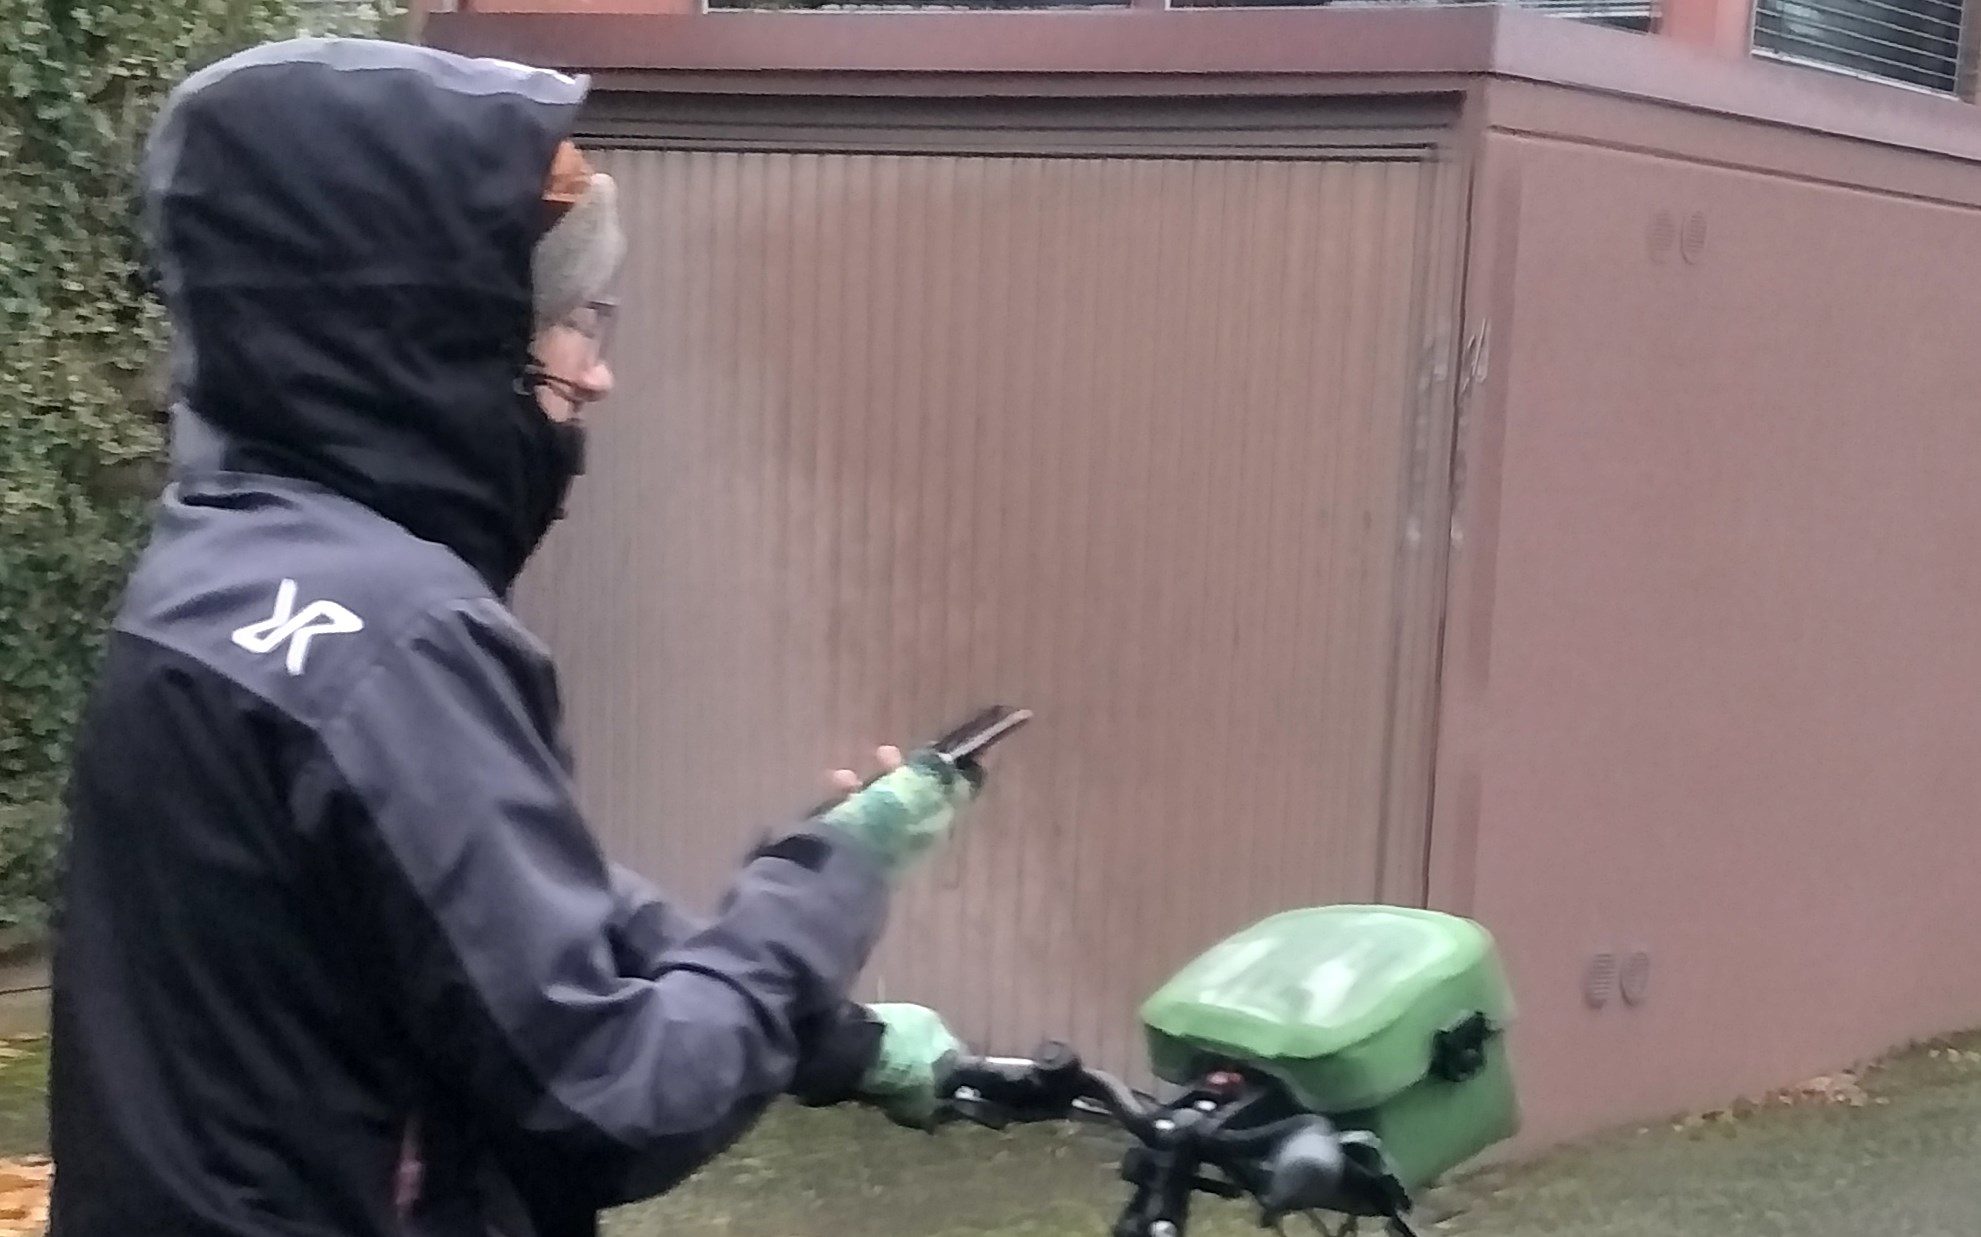 Frau auf Fahrrad mit Handy in der Hand.